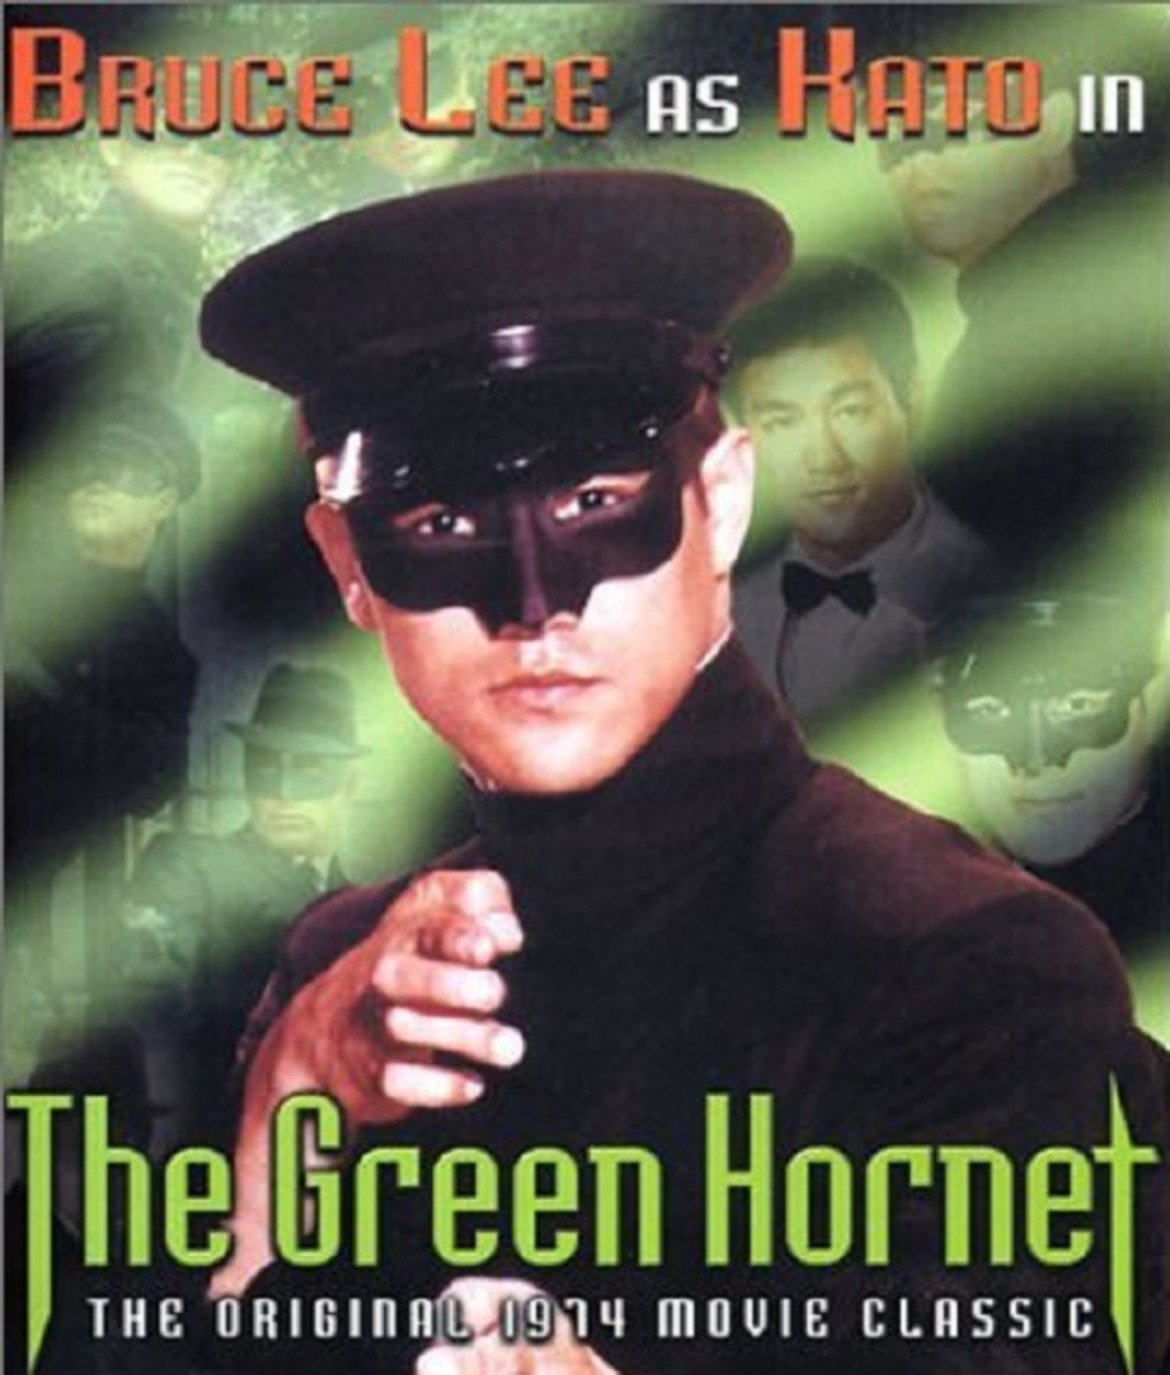 The Green Hornet (1966-1967)  Американски телевизионен сериал за богаташ, който се изживява и като маскиран супергерой - Зеленият стършел. Брус Лий играе ролята на неговия помощник и експерт по бойни изкуства Кейто. Той се появява в същата роля и в няколко епизода на сериала "Batman" с Адам Уест.